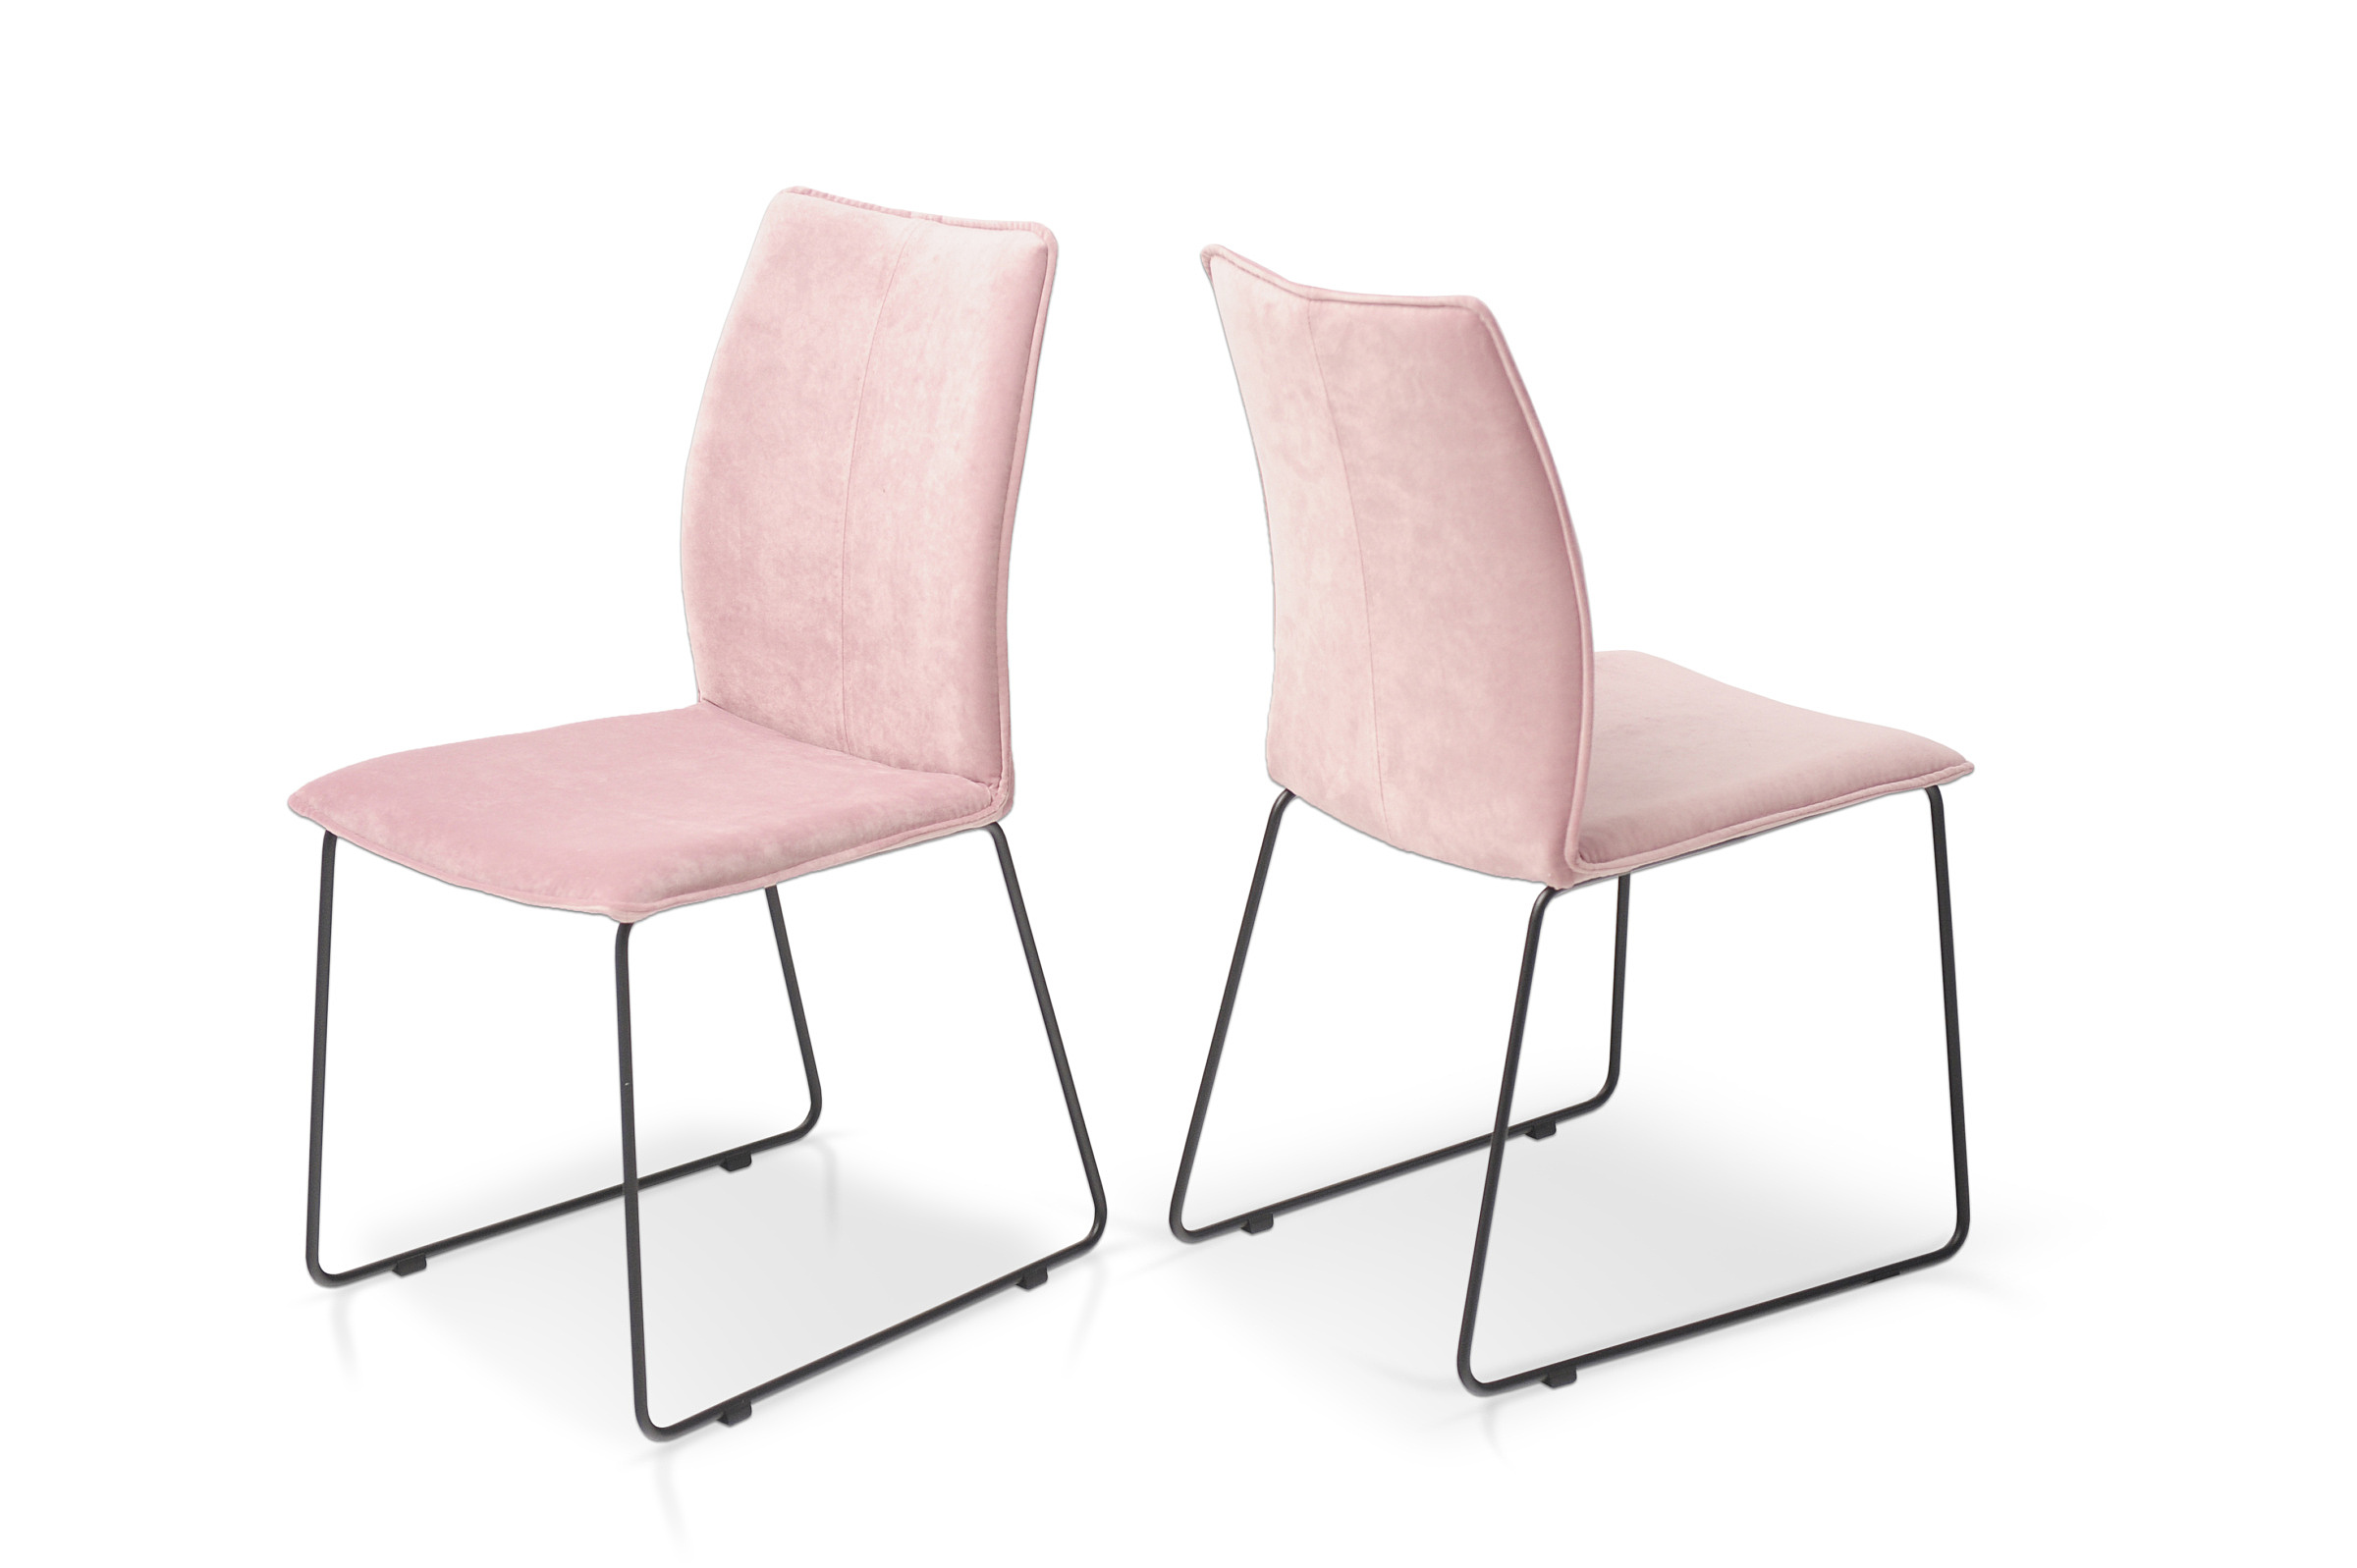 Zestaw krzeseł salonowych w kolorze różu pink delikatny róż piękny kolor wygodne krzesła nowoczesne